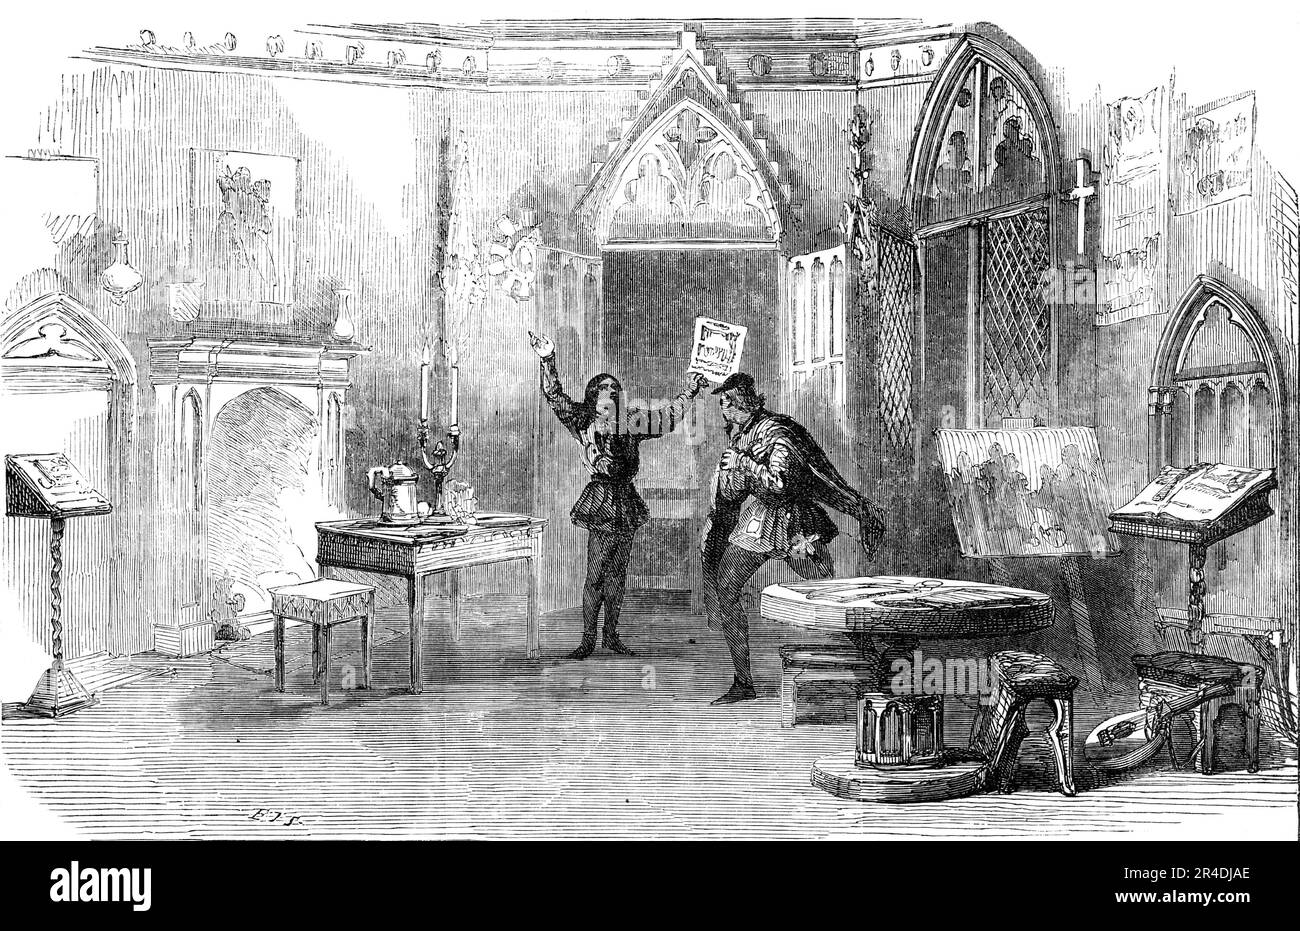 Szene aus dem neuen Stück von "The First Printer", im Princess' Theatre, 1856. Londoner Bühnenproduktion: „...der zweite Akt... die beiden Hauptfiguren - der Held und das böse Genie des Stücks - Laurence Costar (Mr. Charles Kean) und John von Gutenberg (Mr. John Ryder). Costar hat in der Einfachheit und dem Selbstvertrauen seiner Seele gerade das Geheimnis seiner Druckerpresse an seinen cleveren Konkurrent weitergegeben; und die beiden machen Eindrücke von einem revolutionären Dokument, das der erste kopiert hat. In diesem Teil des Auftritts vererbt Costar die Kunst des Druckens Stockfoto